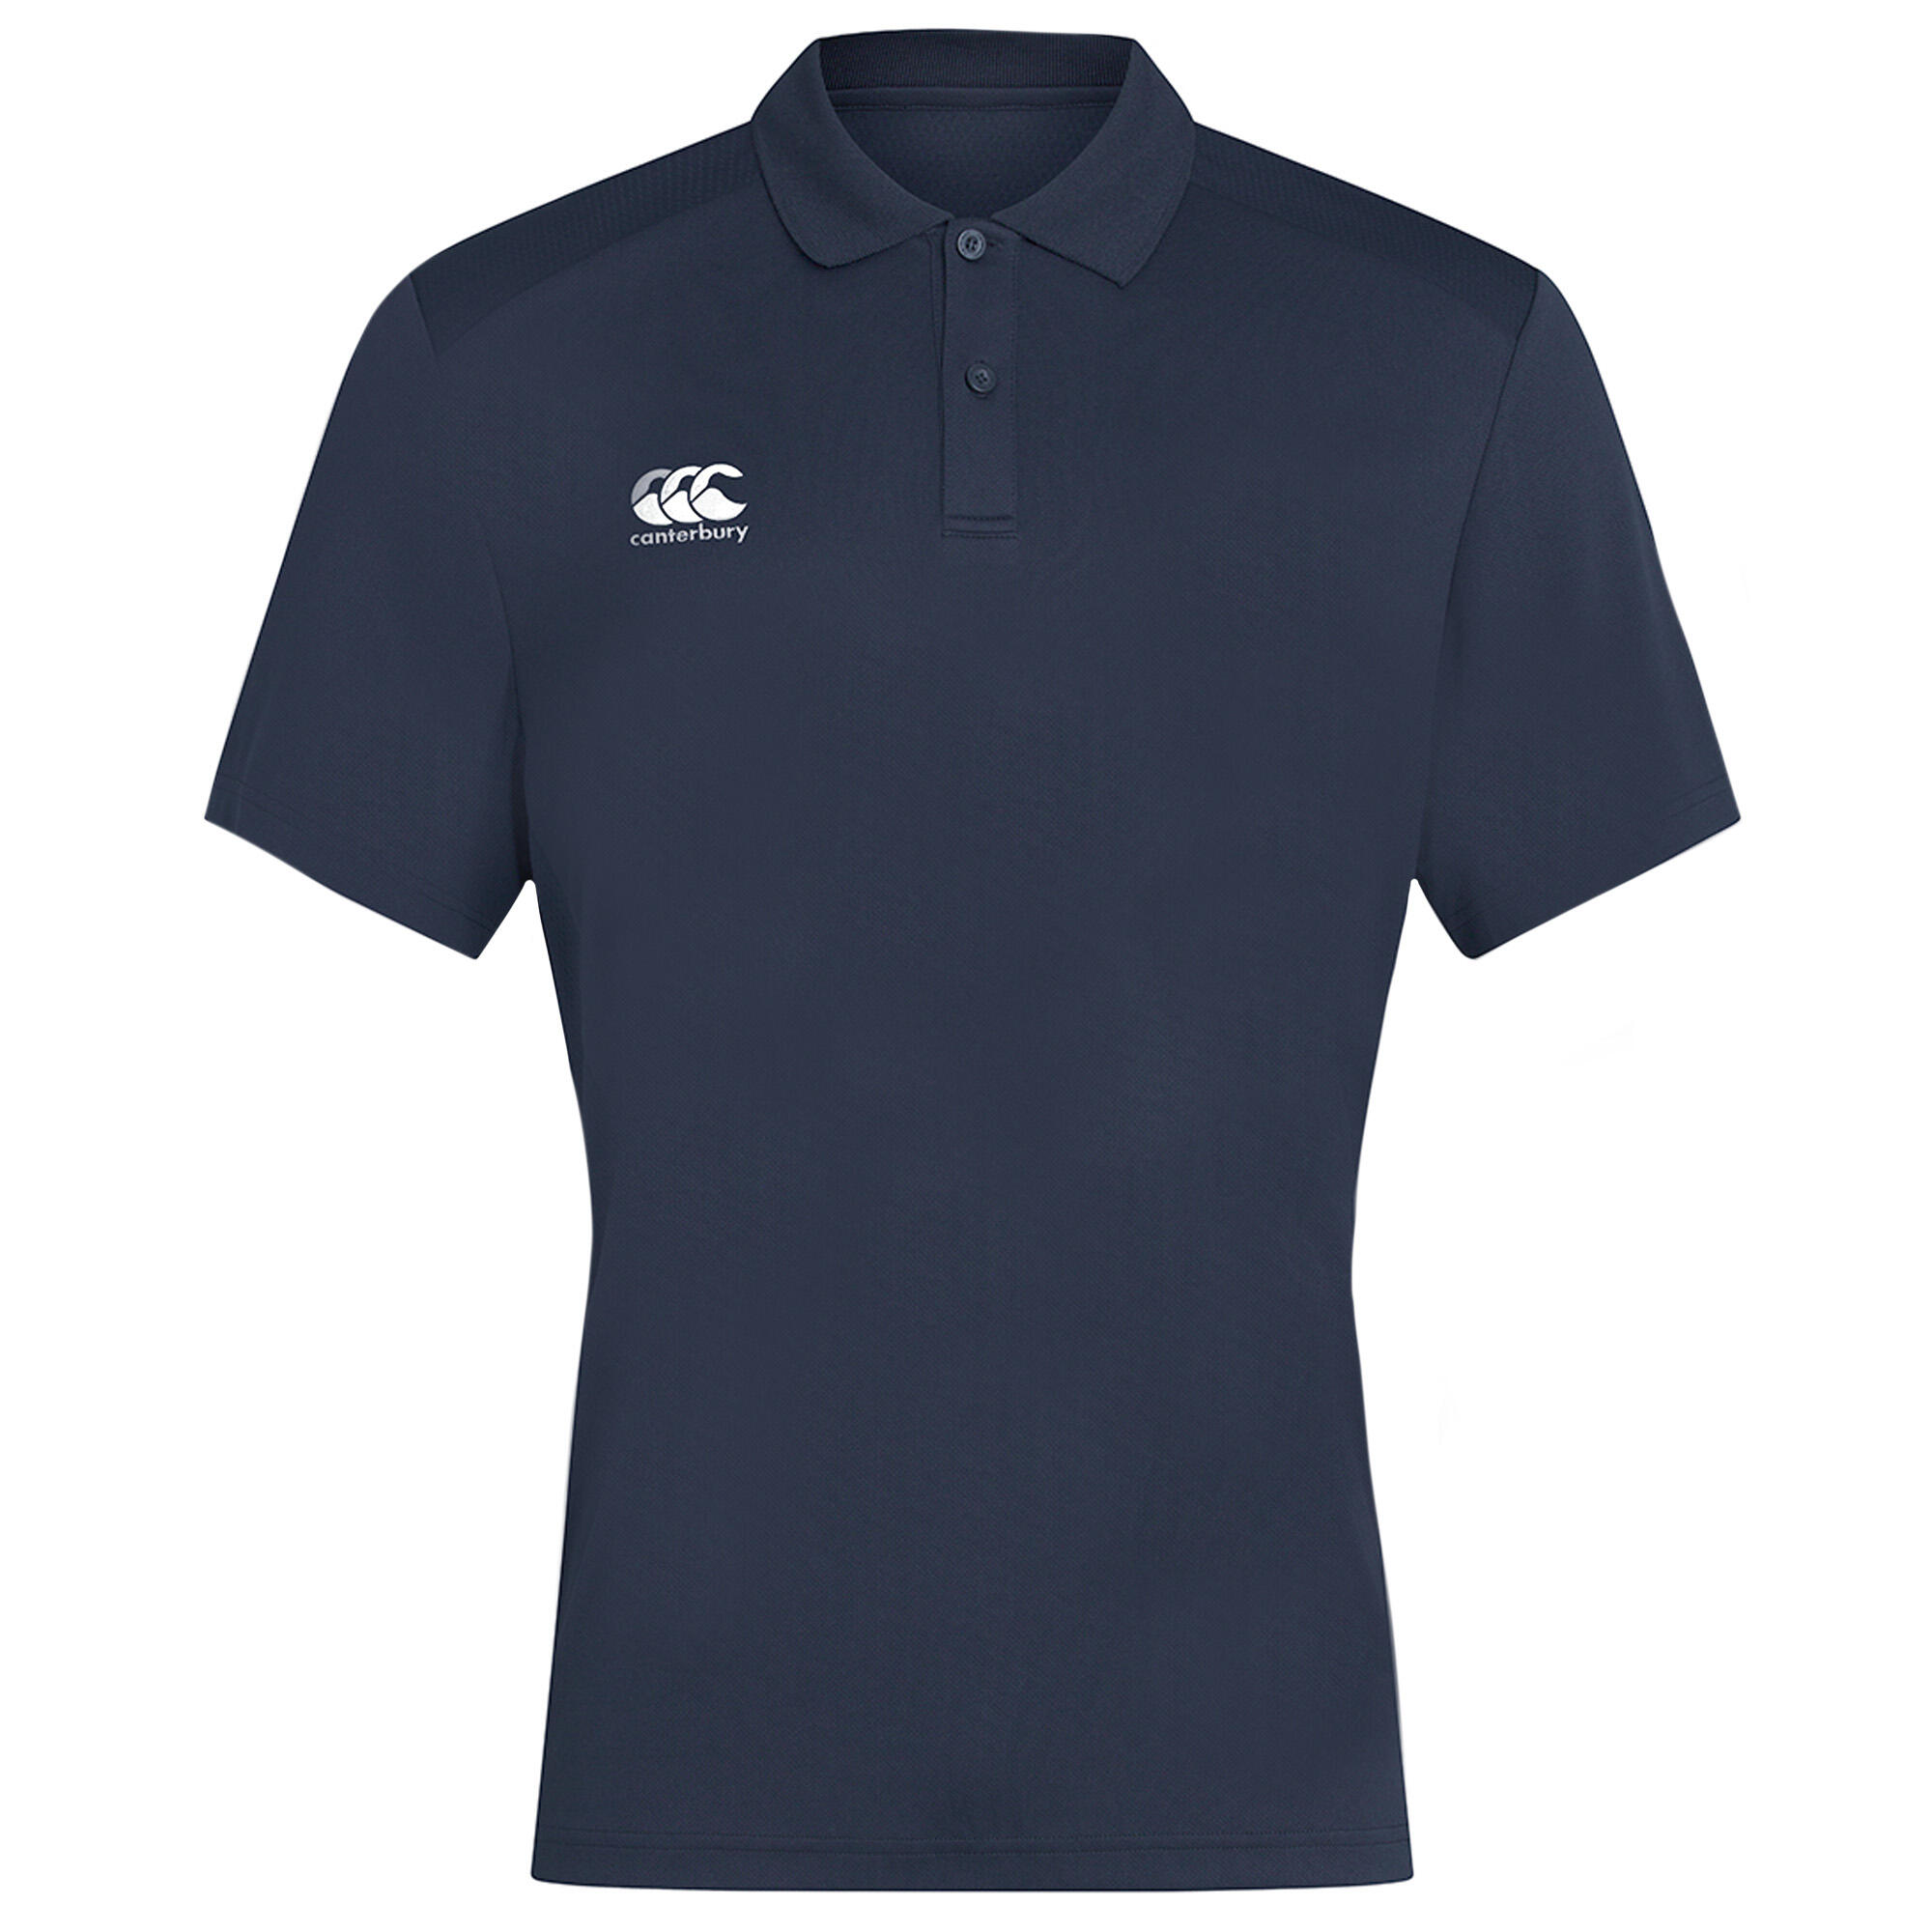 CANTERBURY Mens Club Dry Polo Shirt (Navy)